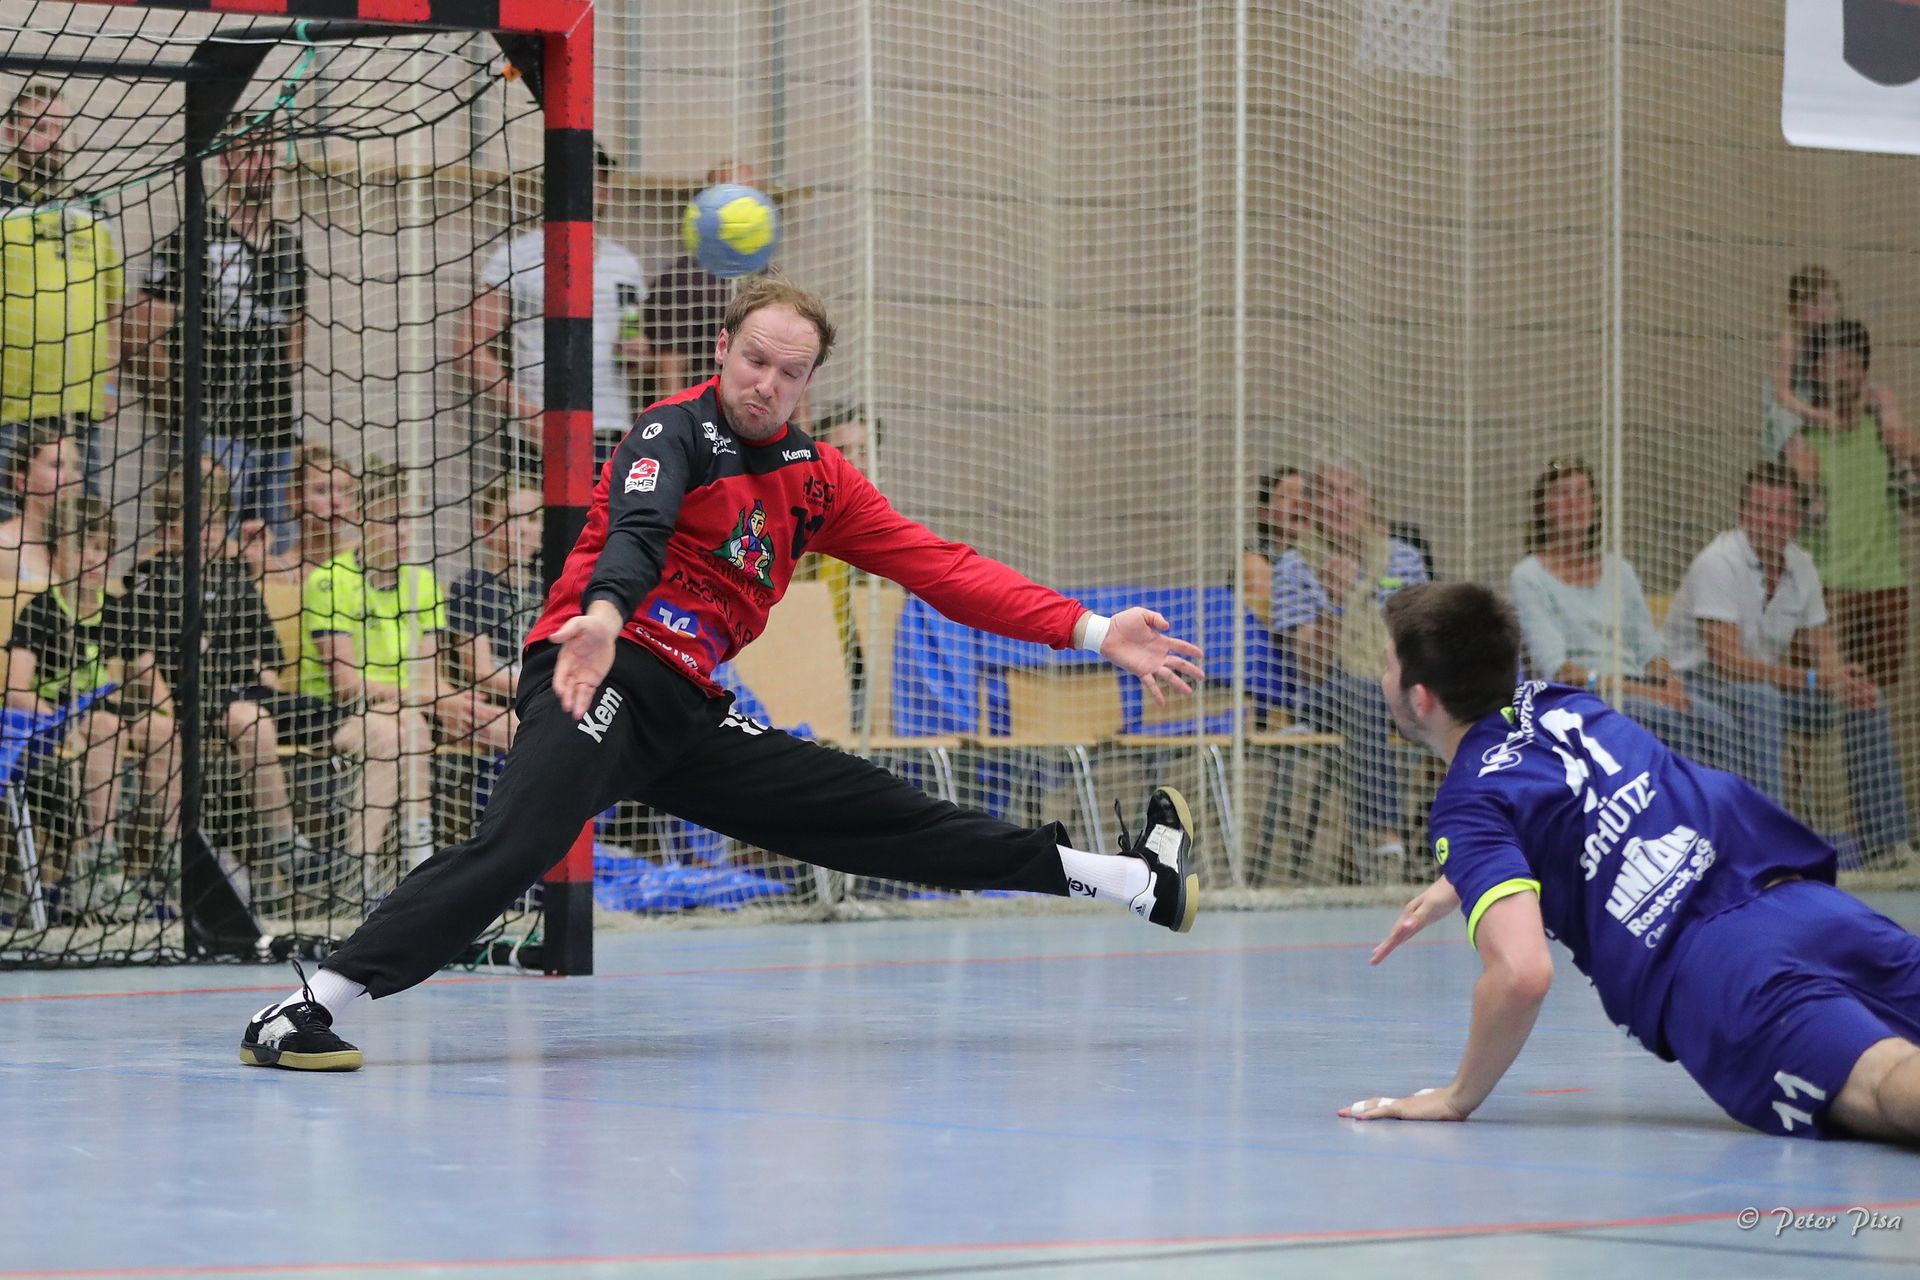 Simon Tölke in Aktion vor dem Tor beim Versuch den Angriff eines Gegners abzuwehren. Der gegnerische Spieler fängt sich nach seinem Wurf mit der linken Hand auf dem Boden ab. Der Ball fliegt auf Simon Tölke zu.